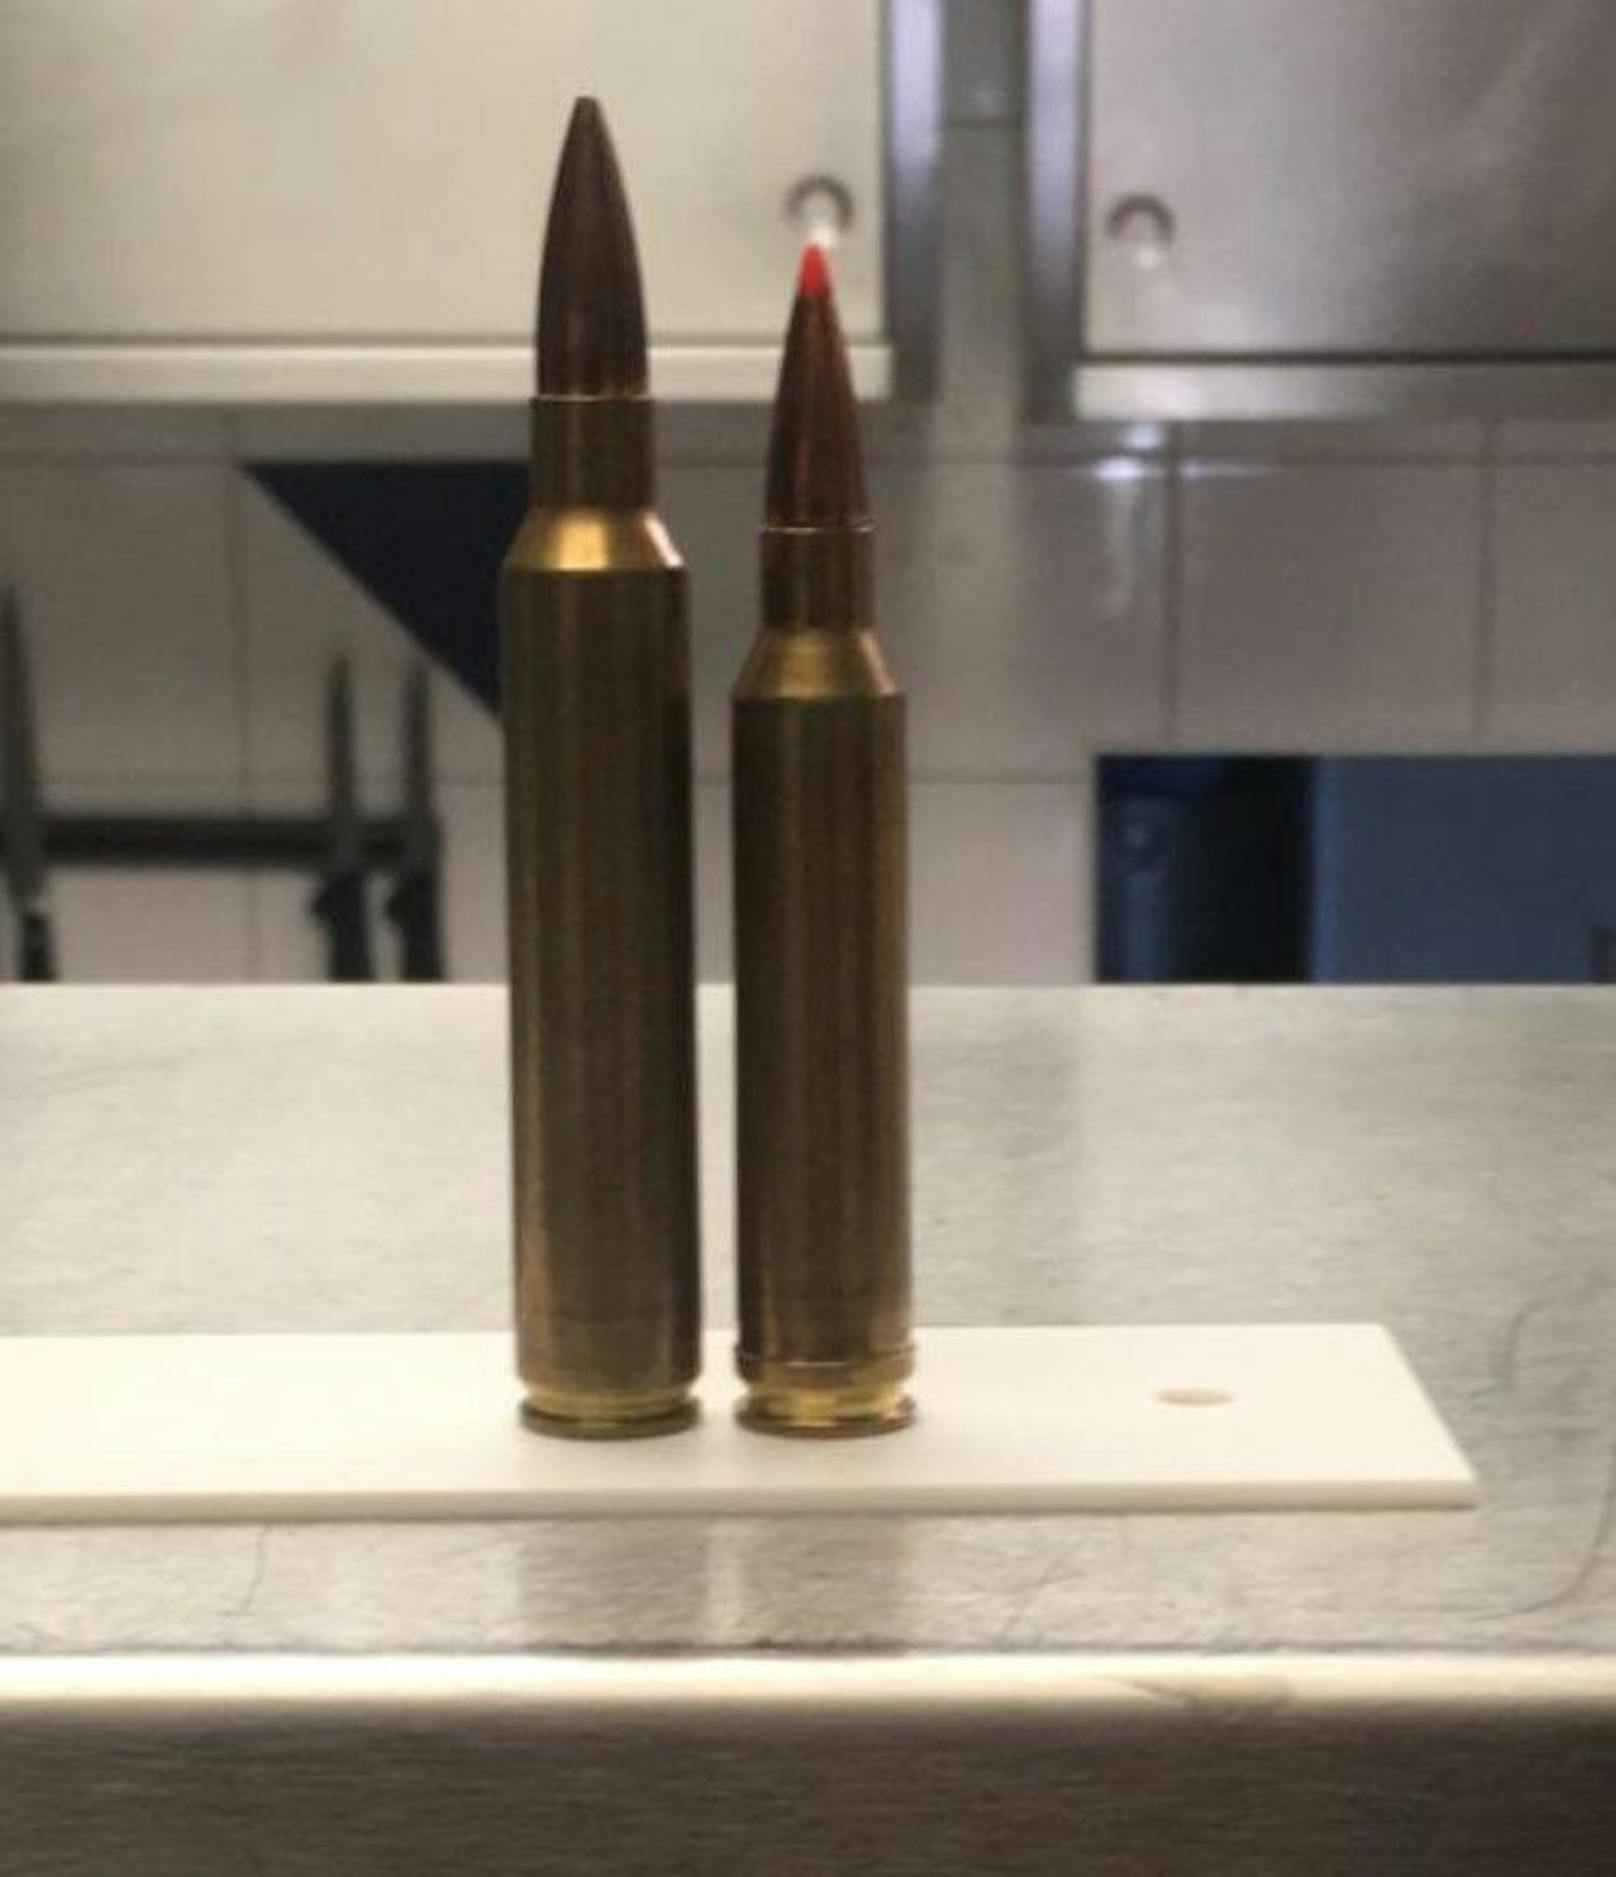 Die Remington 700 samt Munition wurde am 26. Dezember in Hart im Zillertal, Tirol, gestohlen.